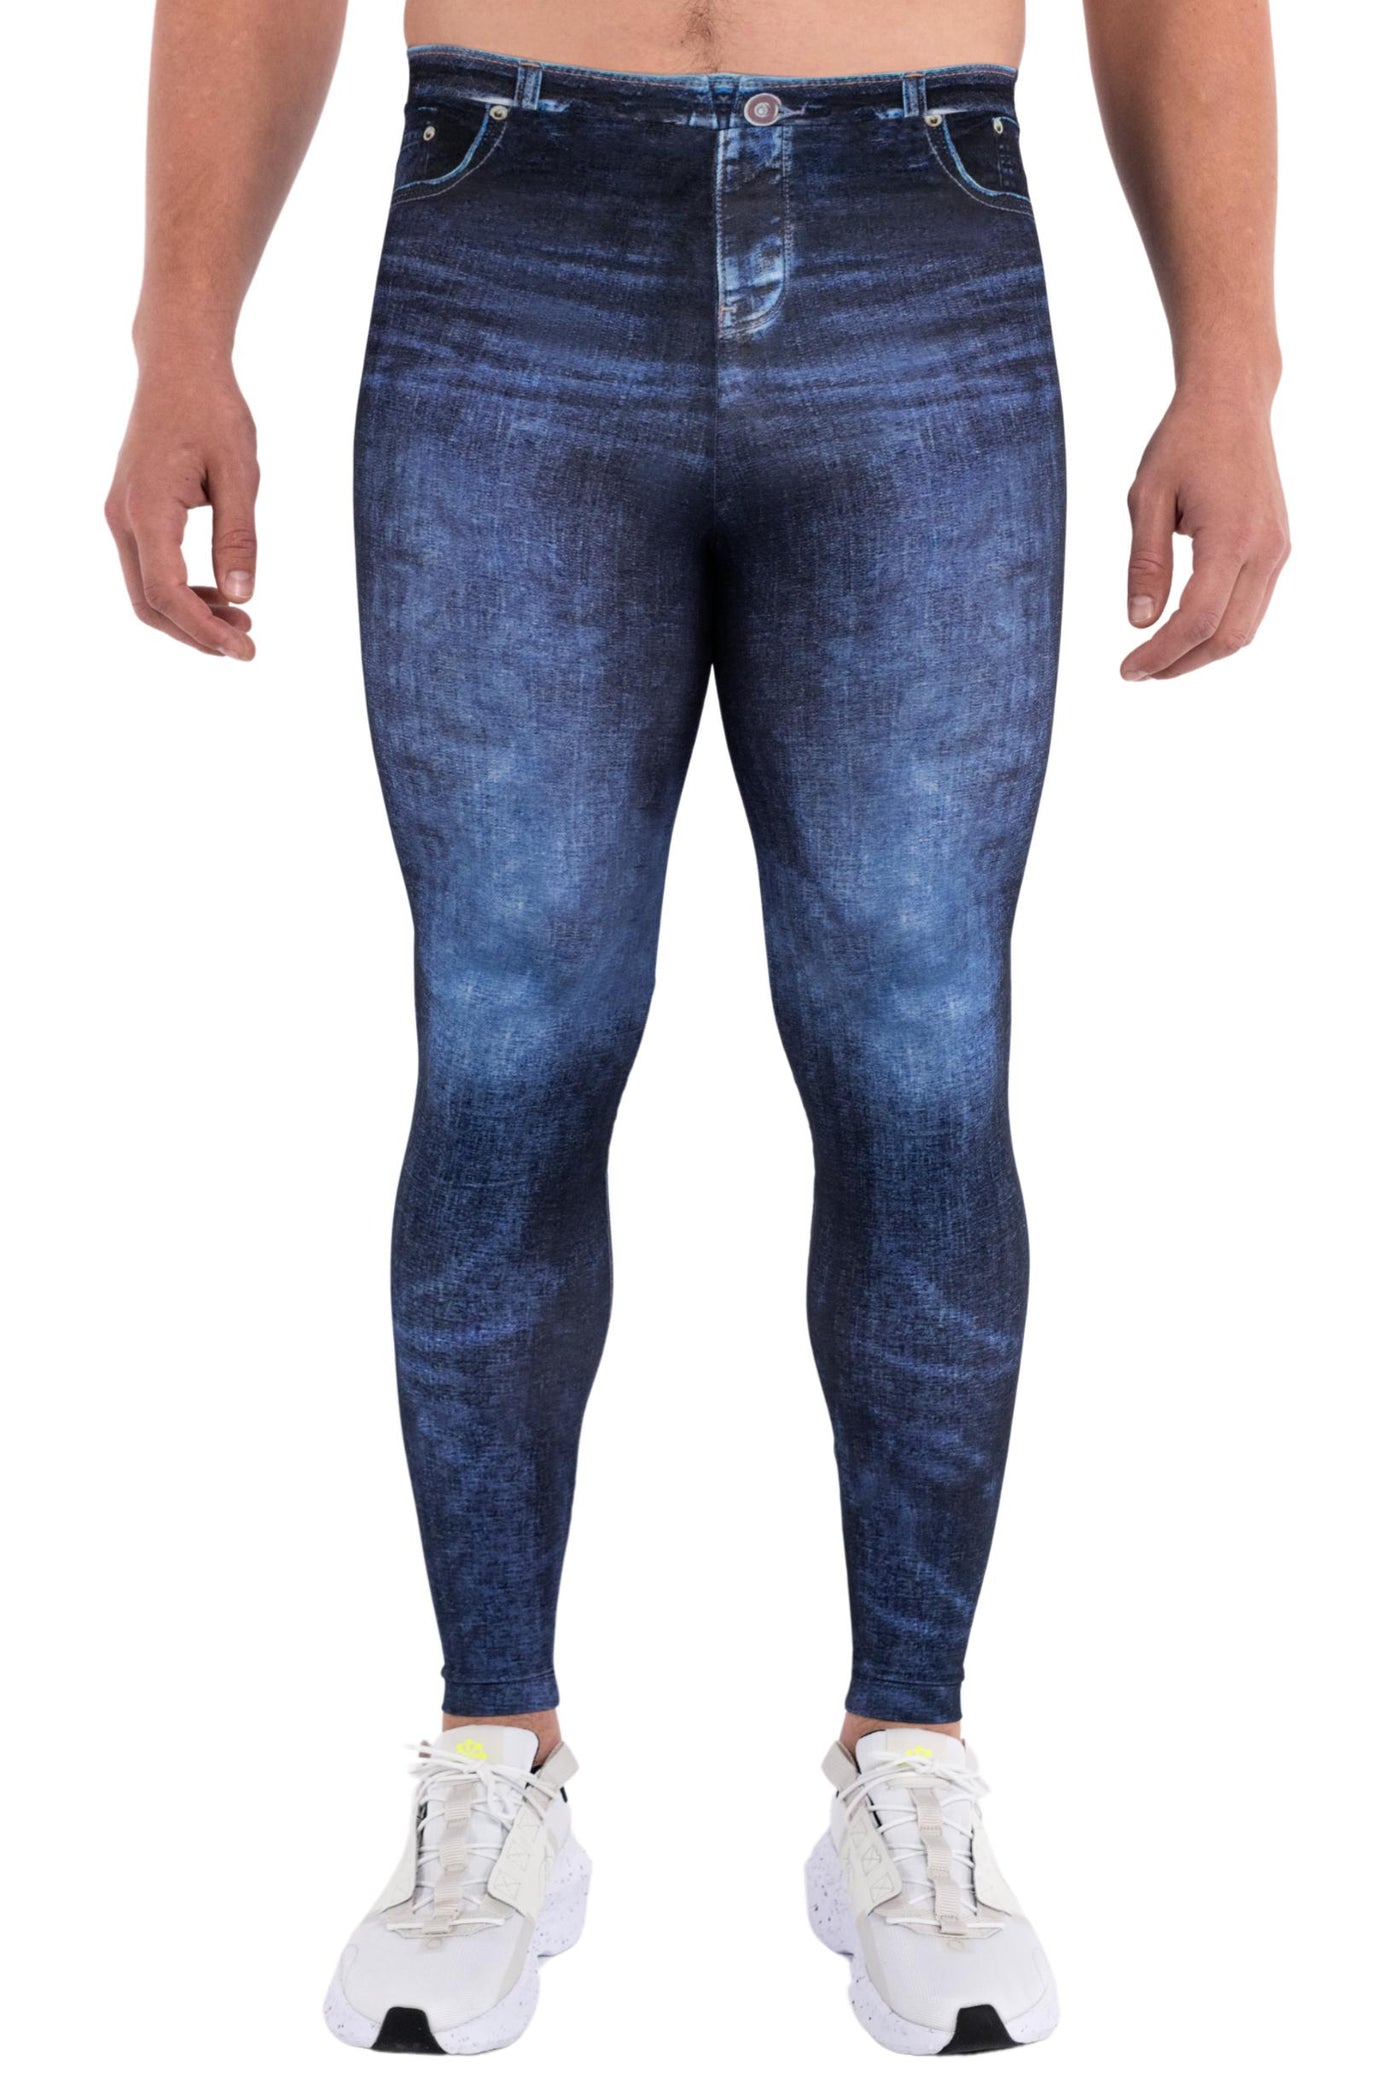 Denim Dan Men's Leggings | Blue Jeans Print | Kapow Meggings